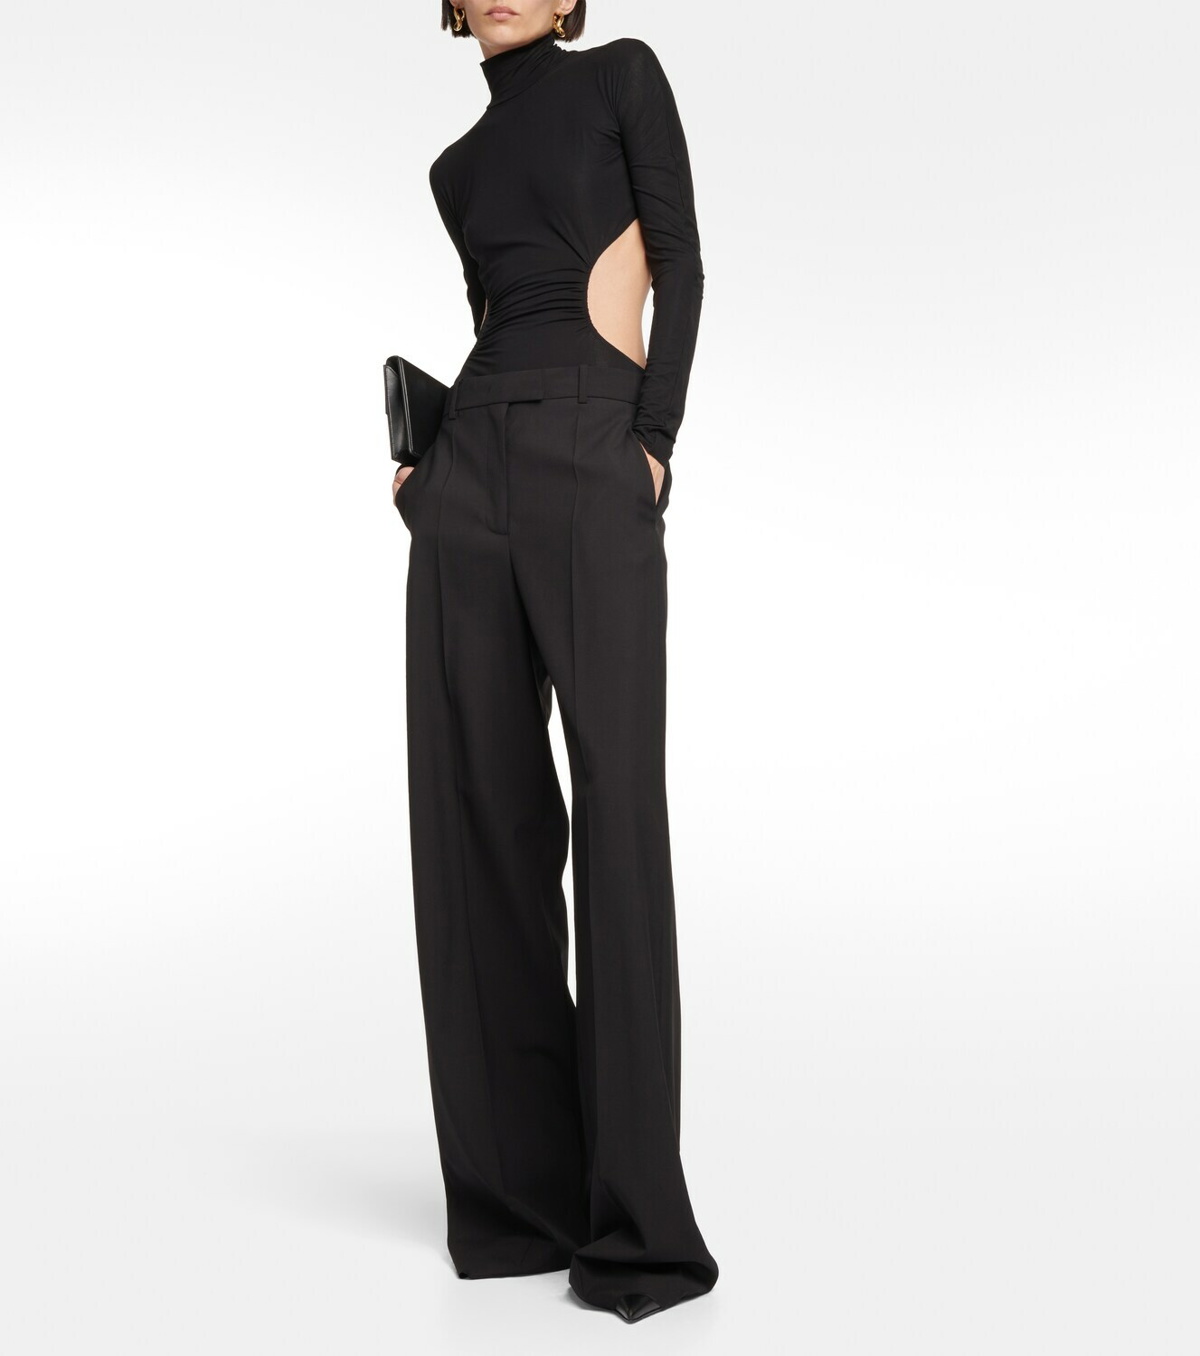 x N21 cutout bodysuit in black - Wolford